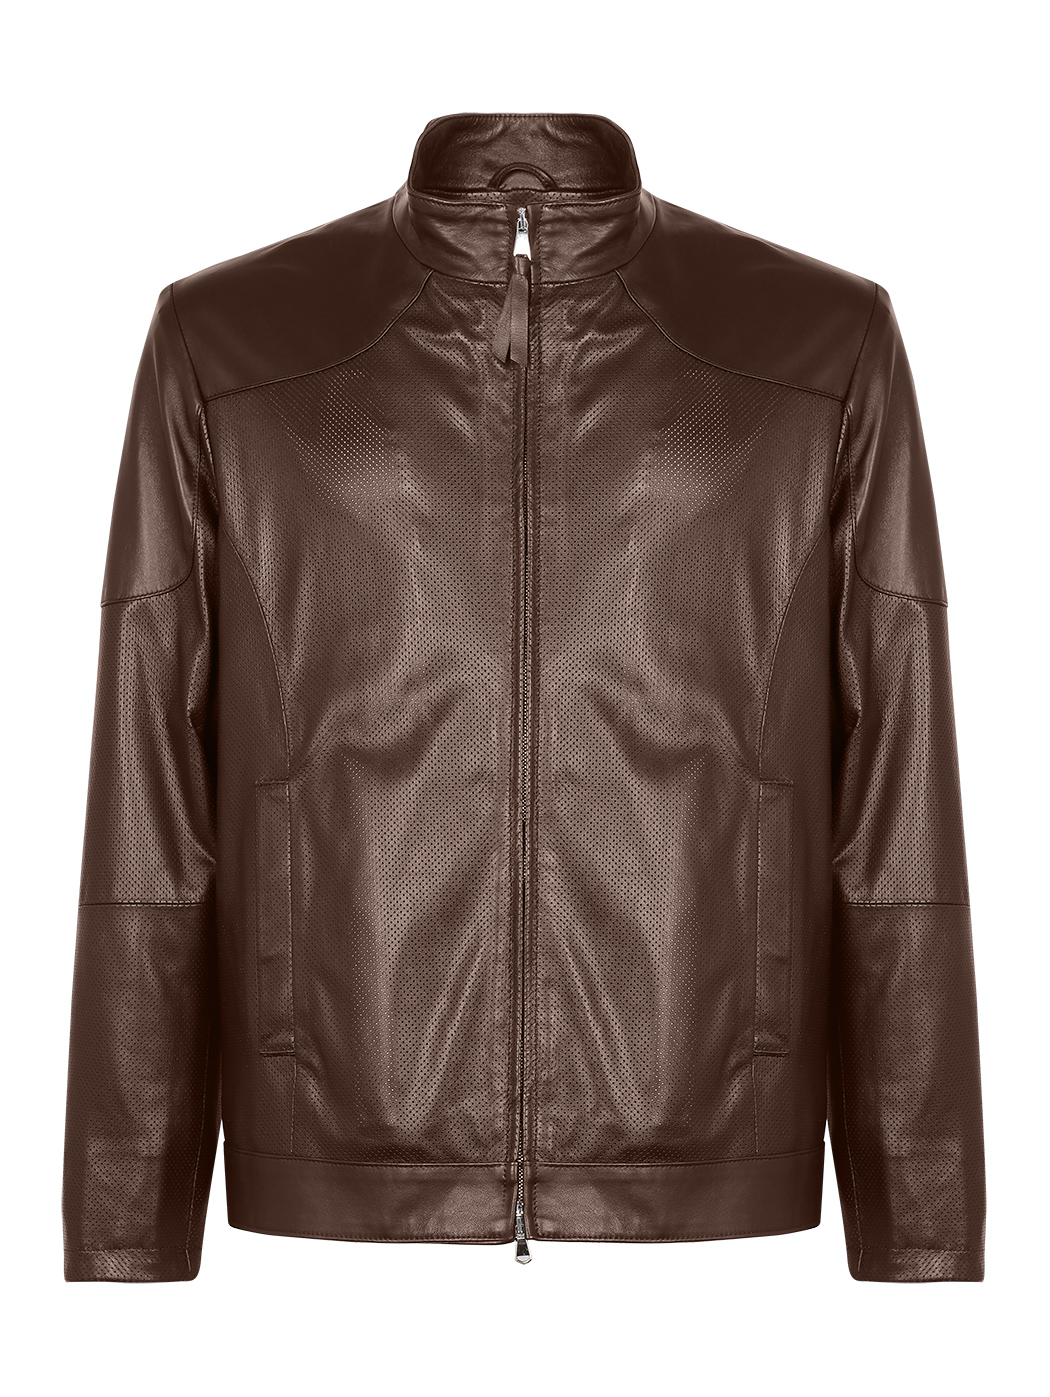 Кожаная байкерская куртка коричневого цвета